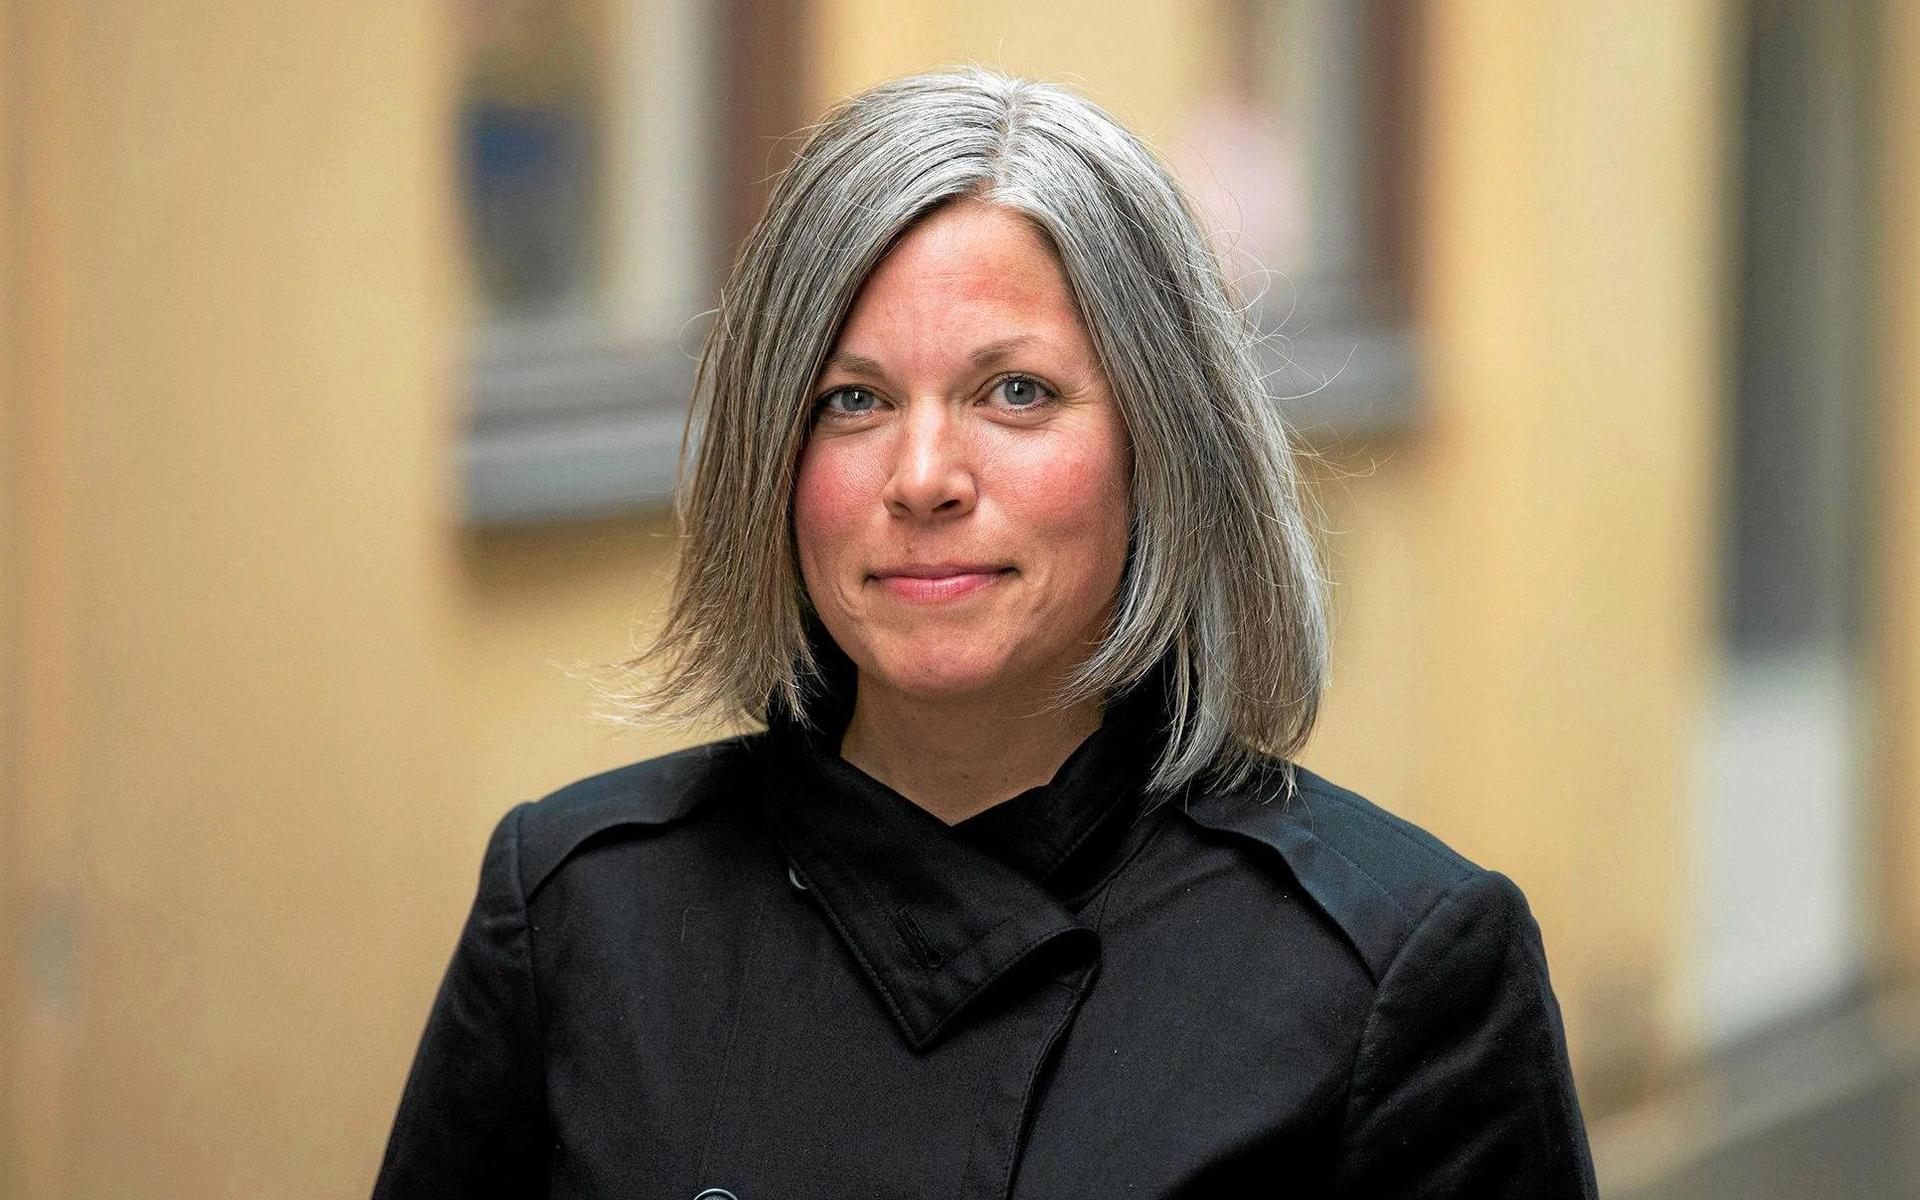 Priset på kommunens tomter på Ranagård behöver höjas om de ska vara marknadsmässiga uppger Jenny Axelsson (C), ordförande i samhällsbyggnadsutskottet.